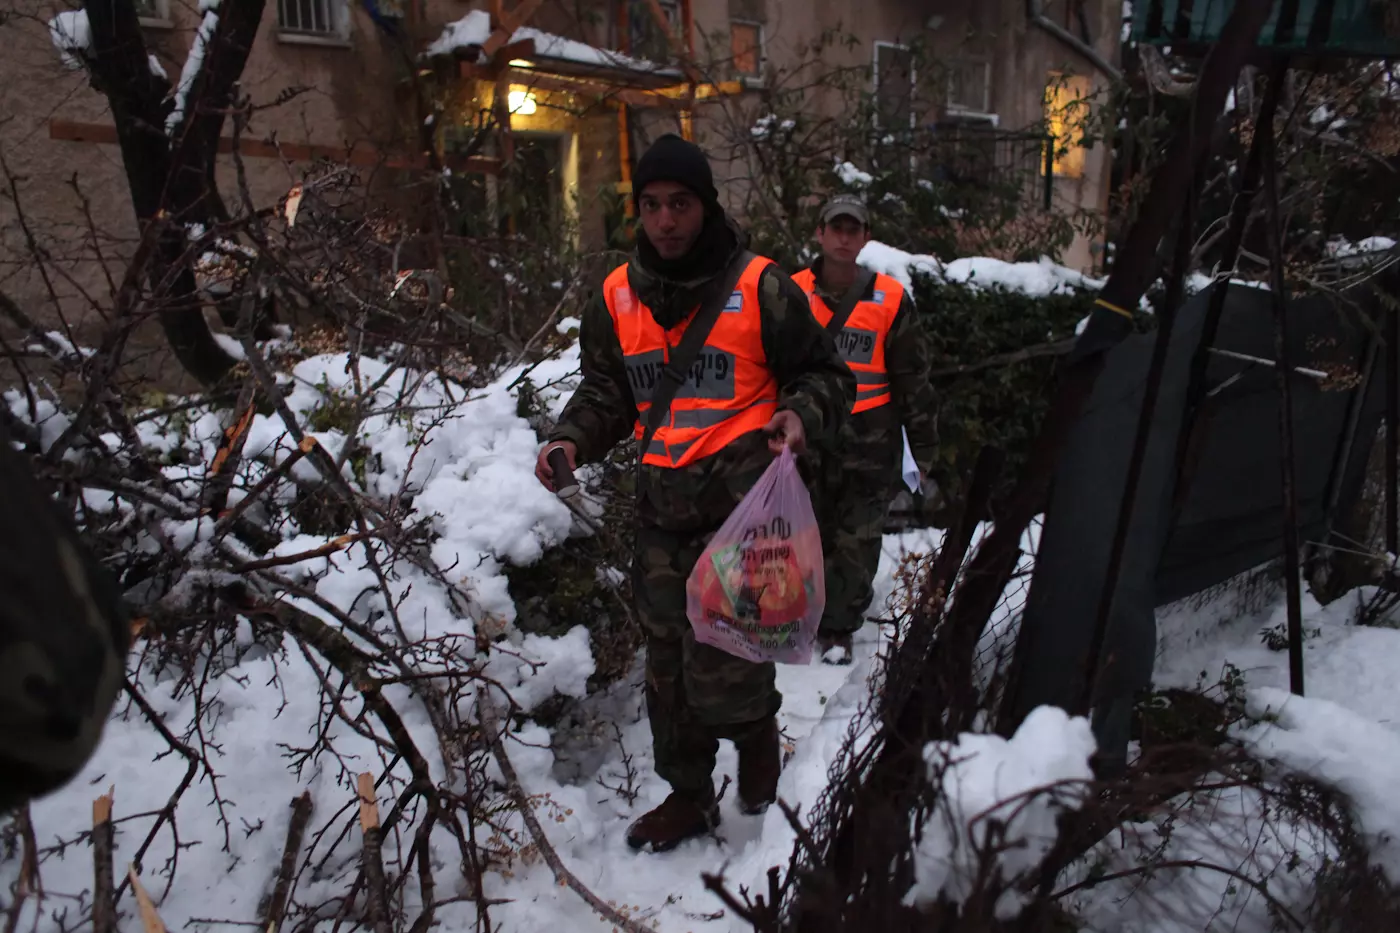 עשרות אלפי בתים עדיין מנותקים. כוחות הביטחון בפעולות סיוע בירושלים, אמש